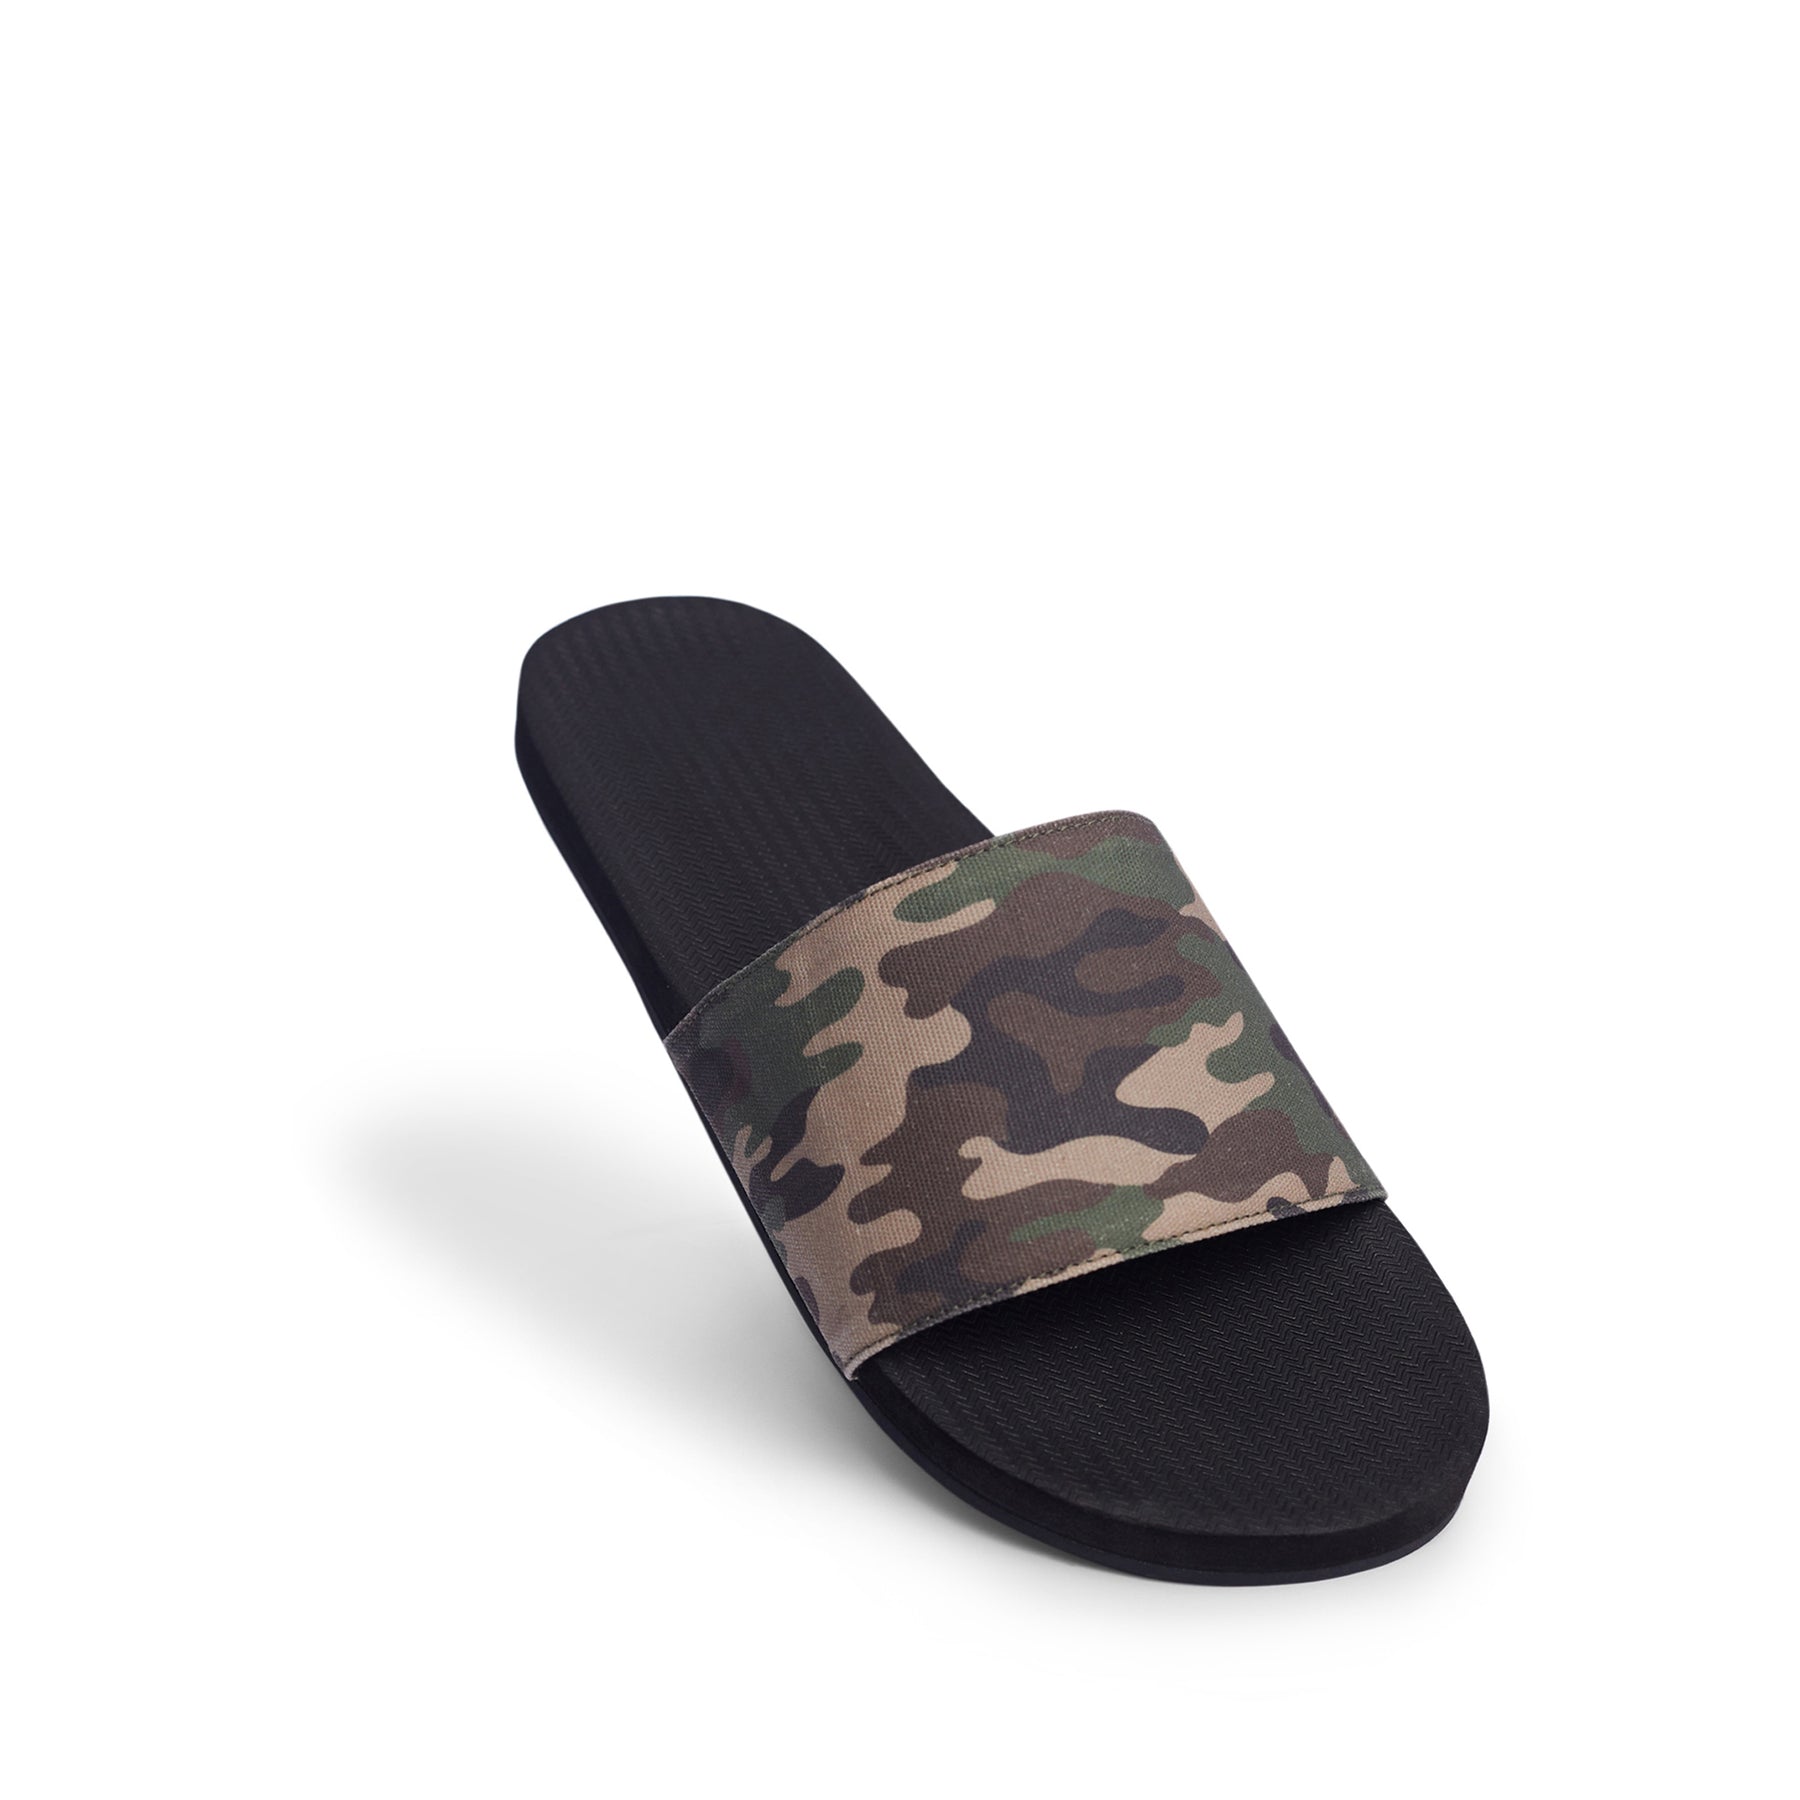 Men's Slides Camo - Black/Camo Regular